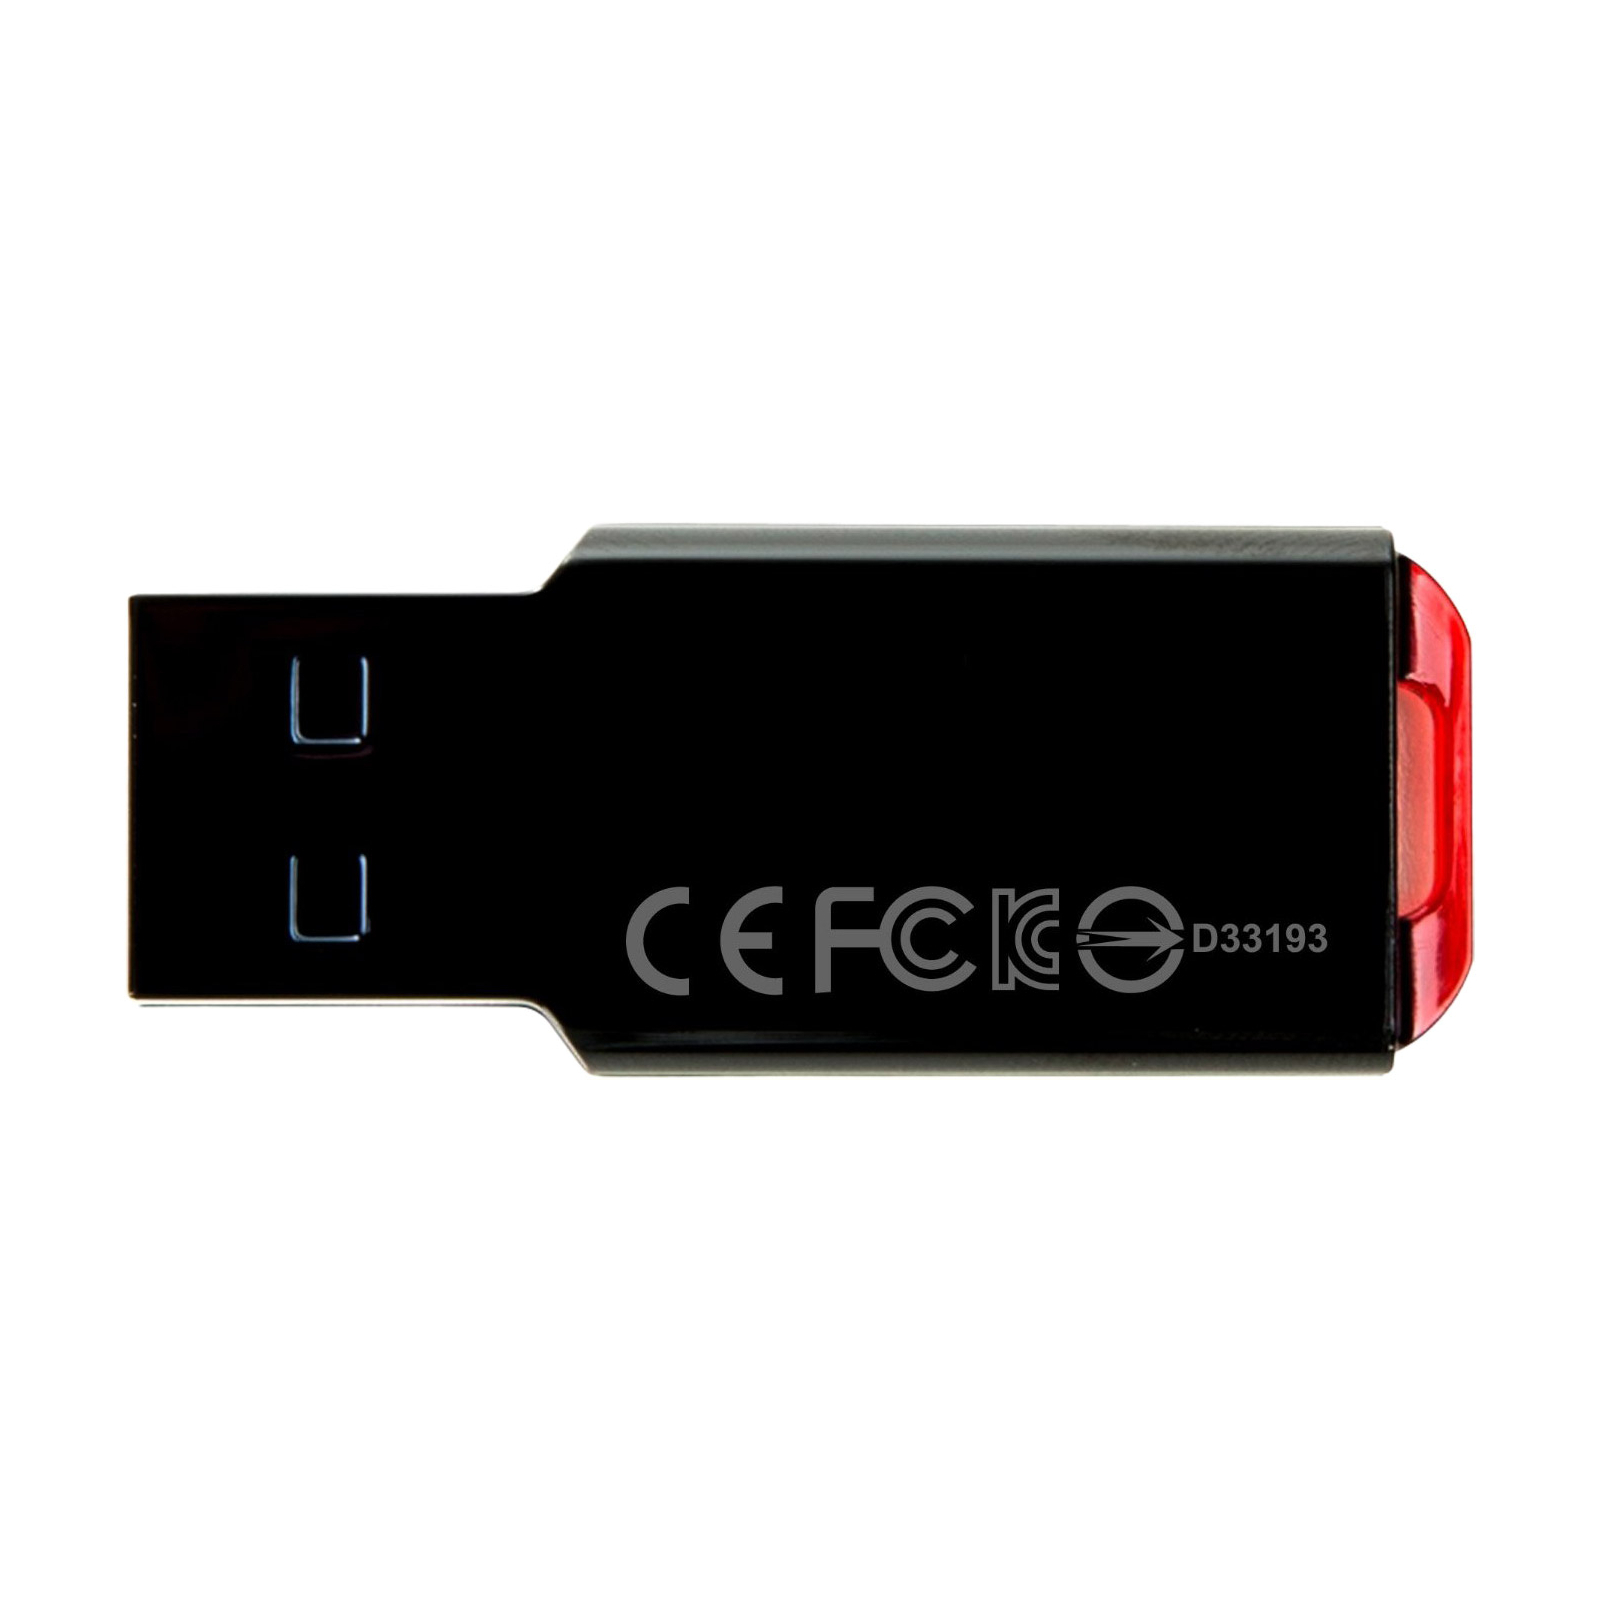 USB флеш накопичувач Transcend 64GB JetFlash 310 USB 2.0 (TS64GJF310) зображення 3